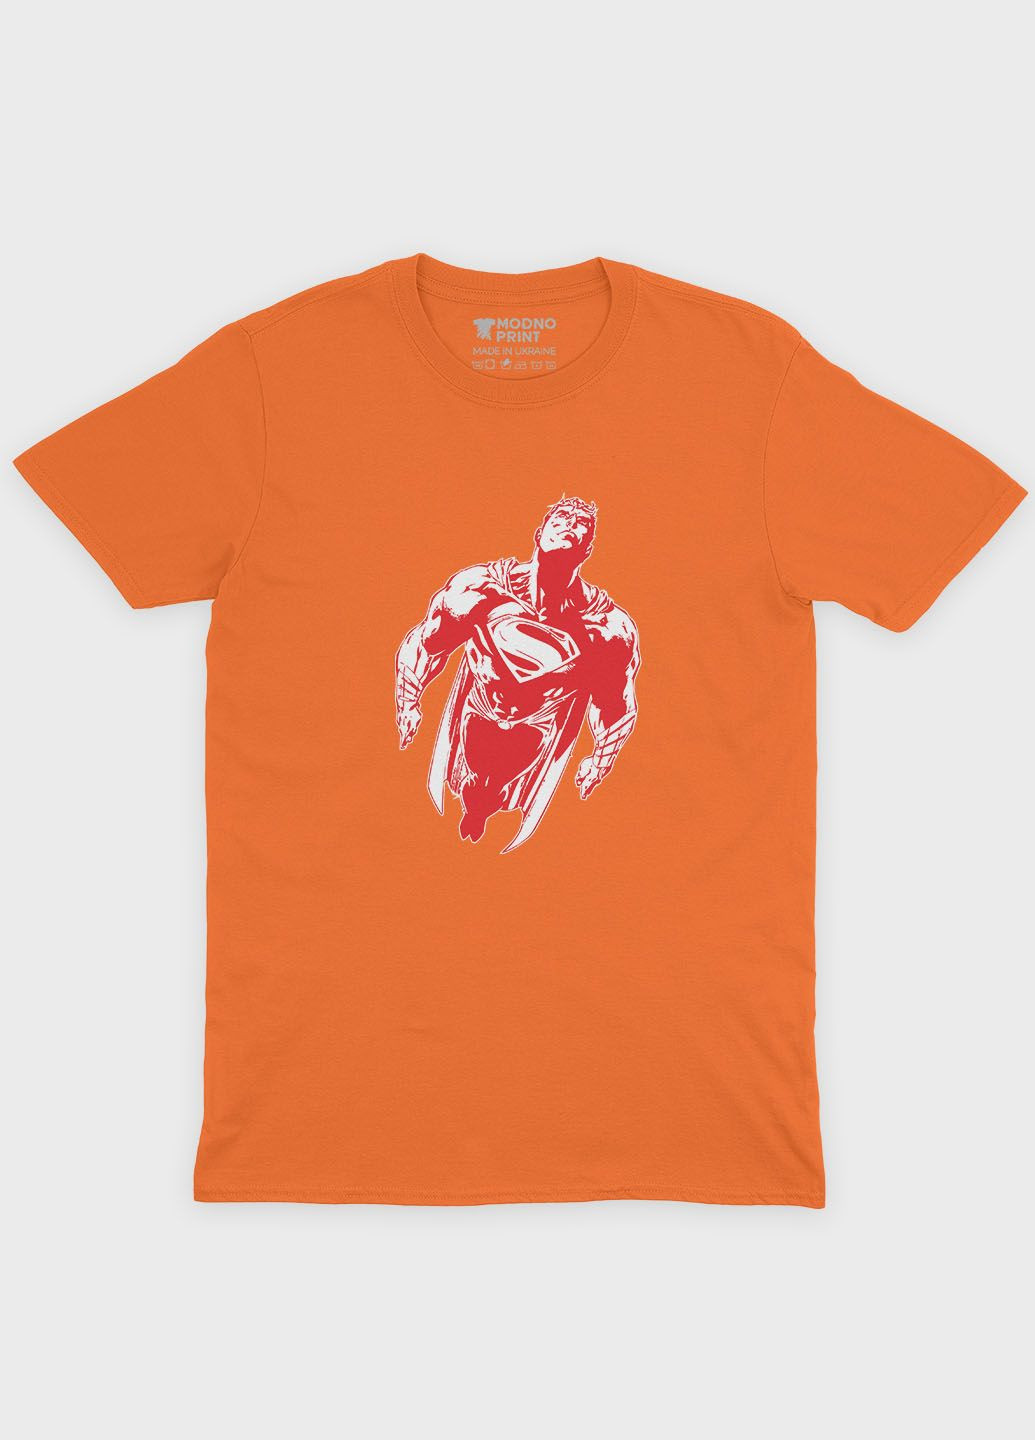 Помаранчева демісезонна футболка для хлопчика з принтом супергероя - супермен (ts001-1-ora-006-009-001-b) Modno